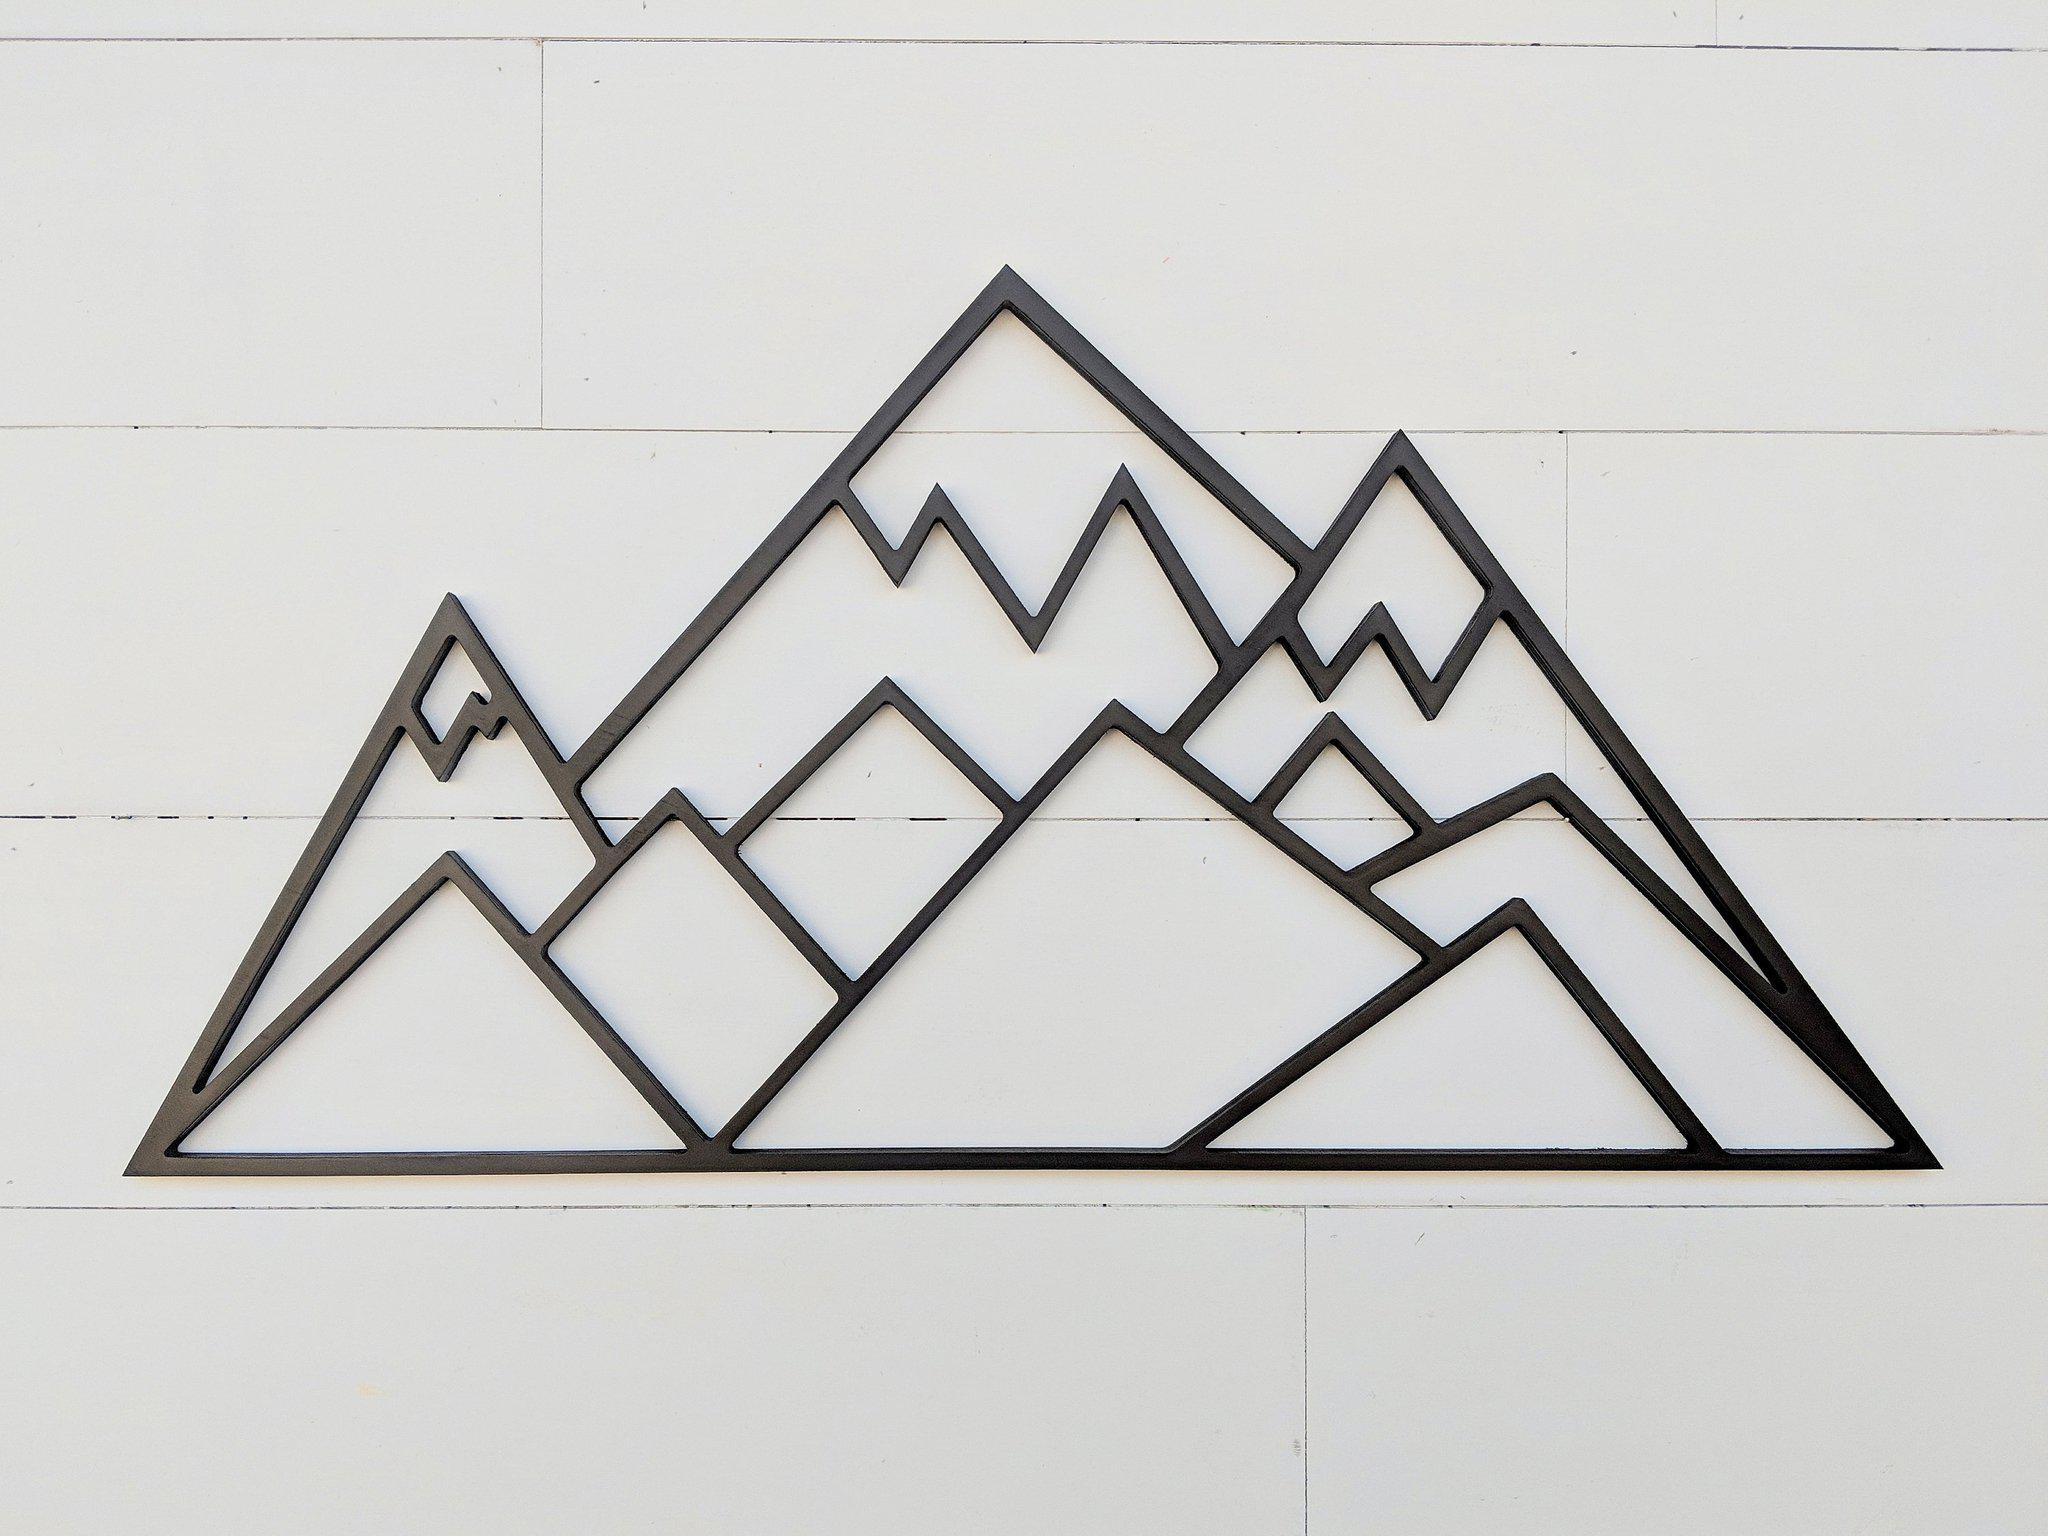 Three Peaks Geometric Mountains